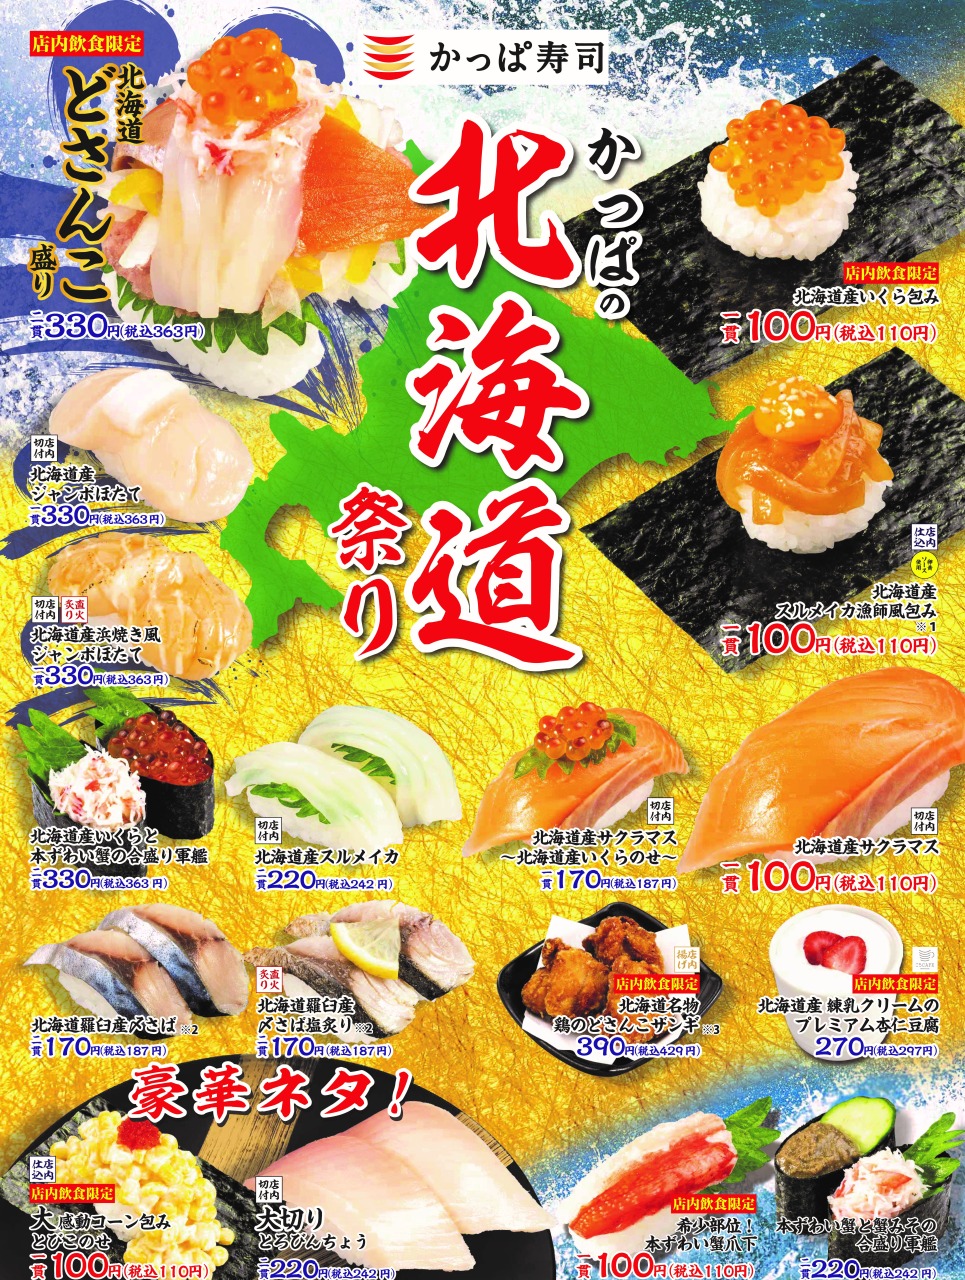 çかっぱ寿司「かっぱの北海道祭り」18